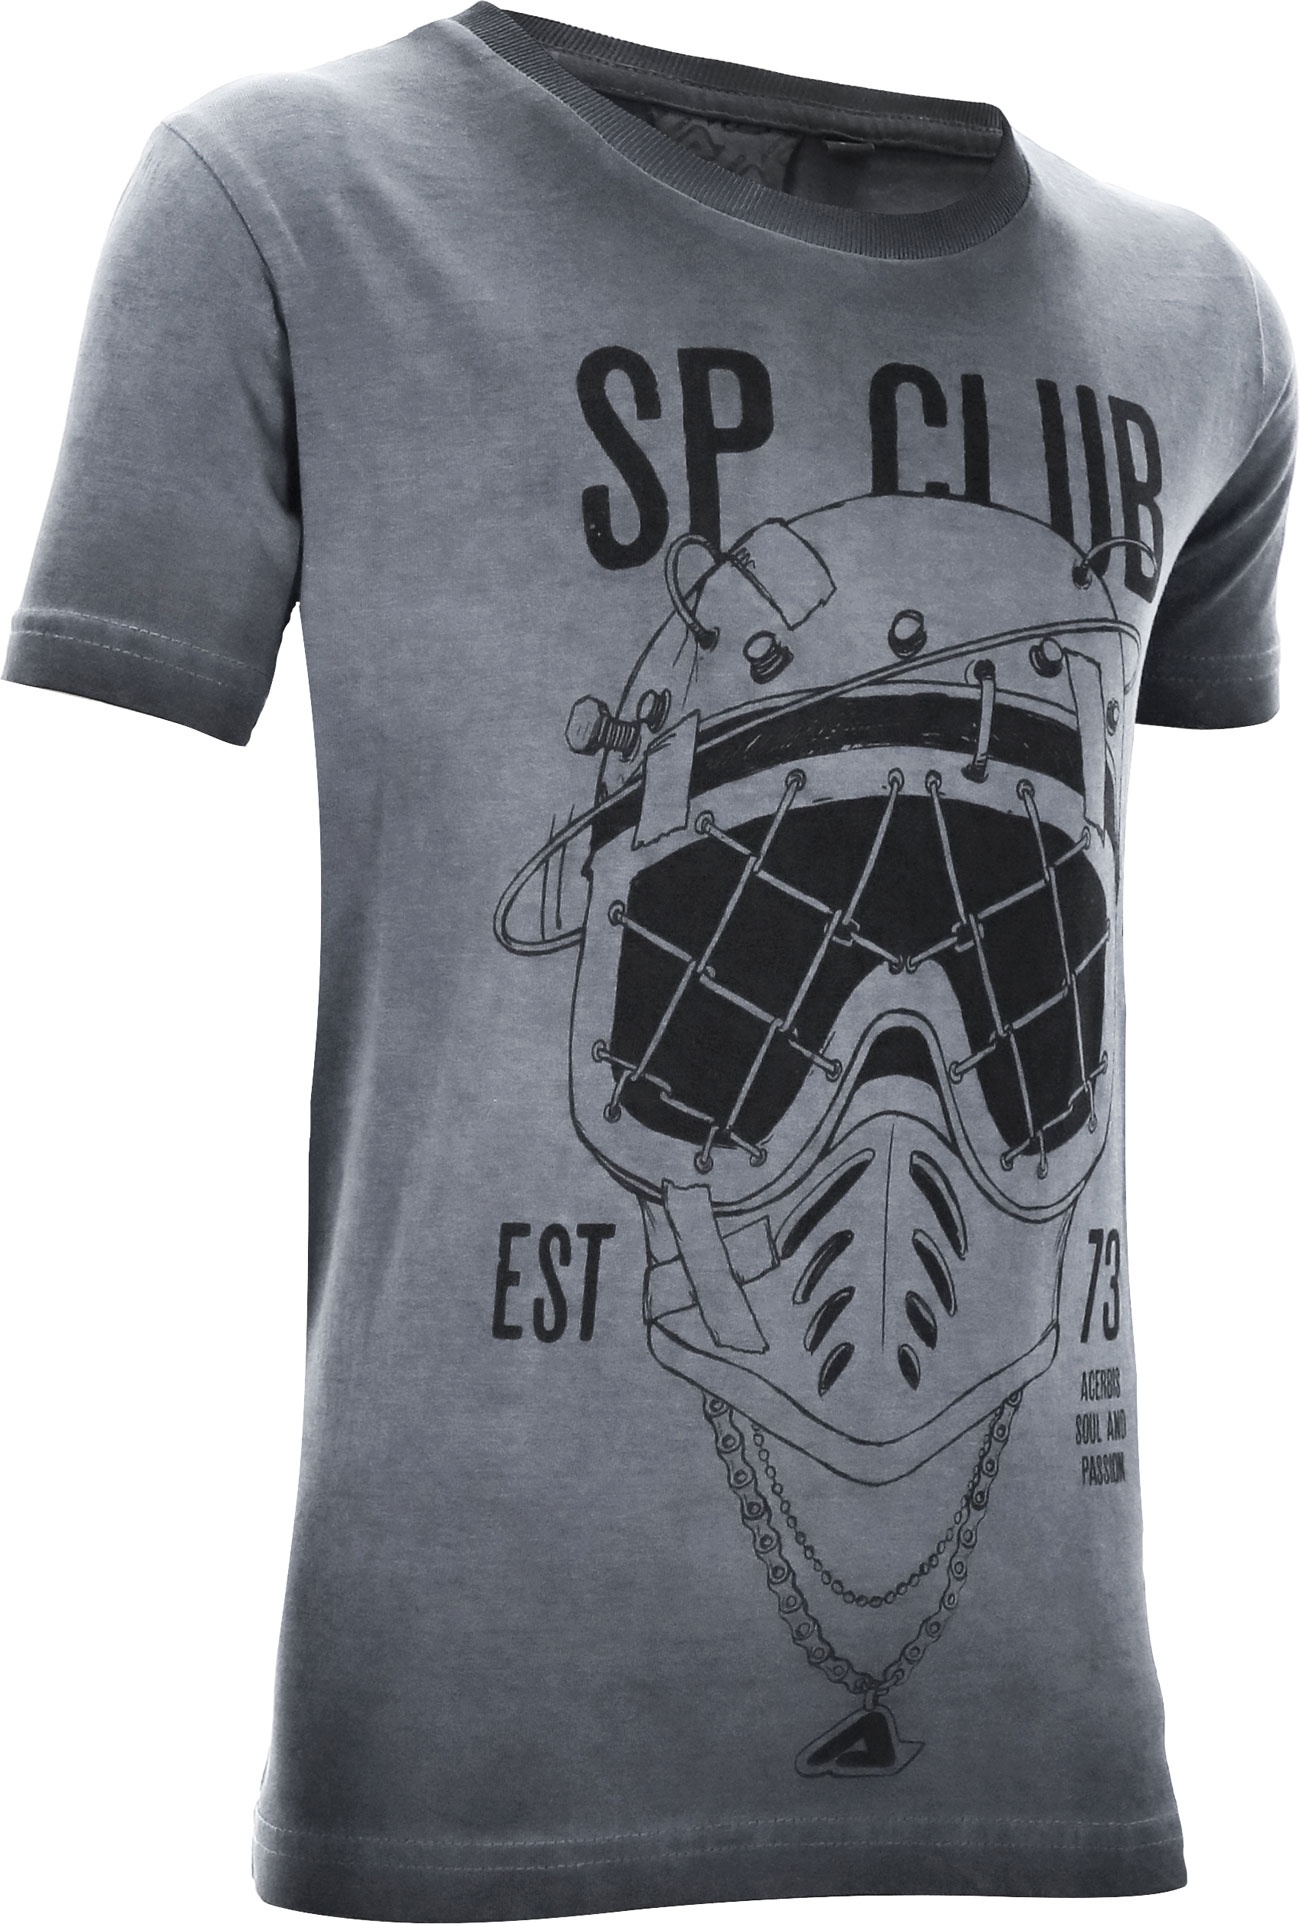 Acerbis SP Club Diver, t-shirt pour enfants - Gris/Noir - XL